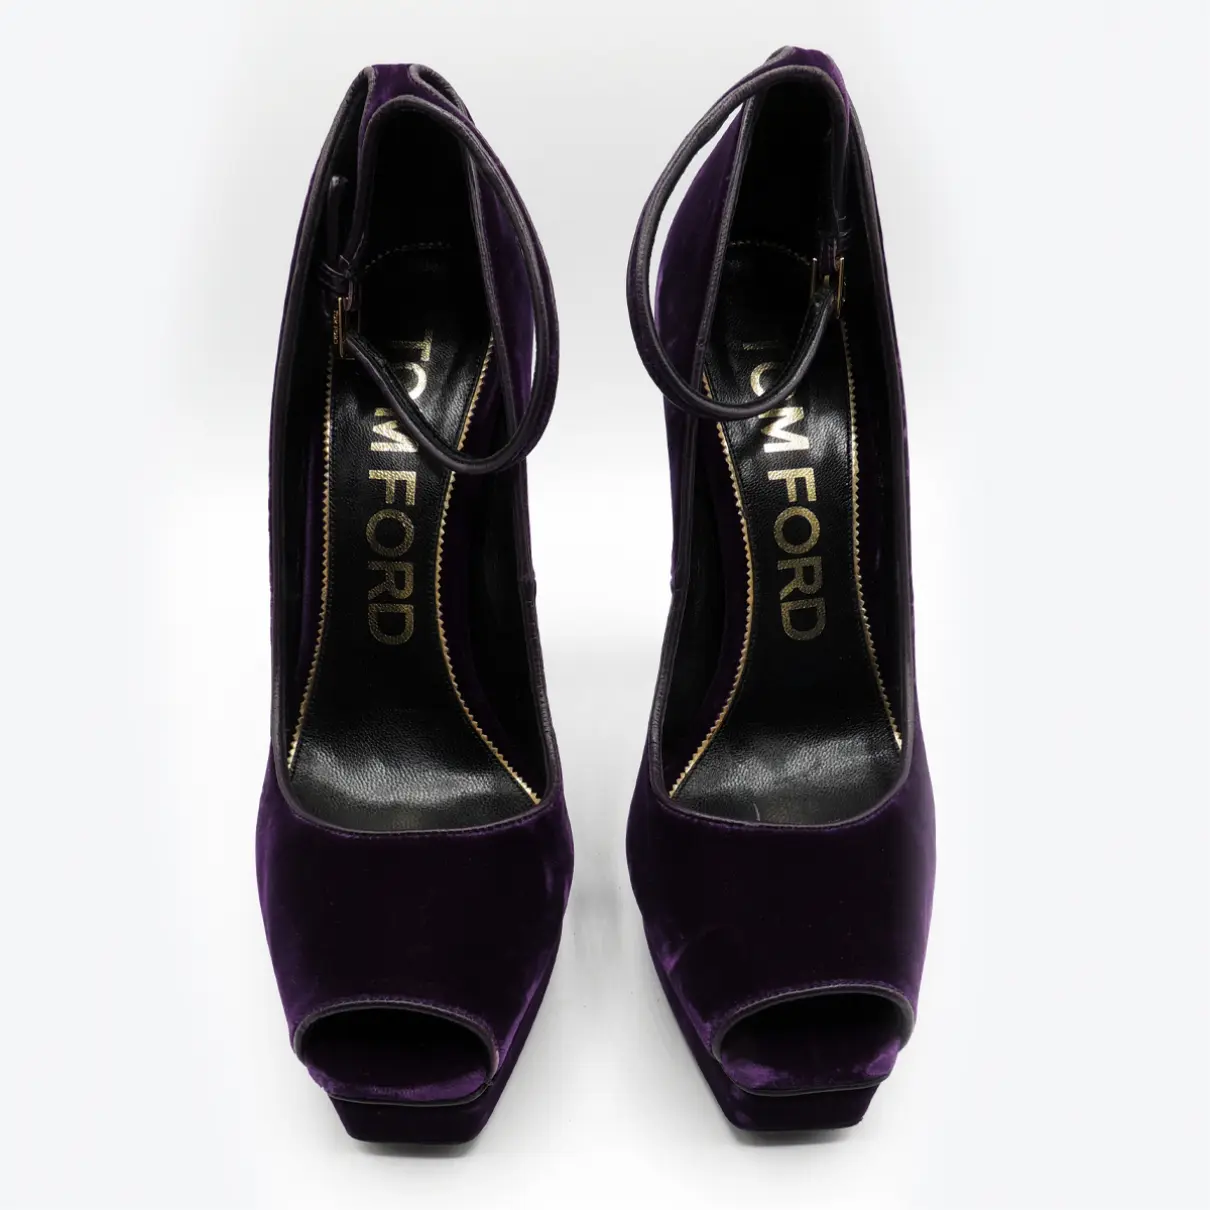 Buy Tom Ford Velvet heels online